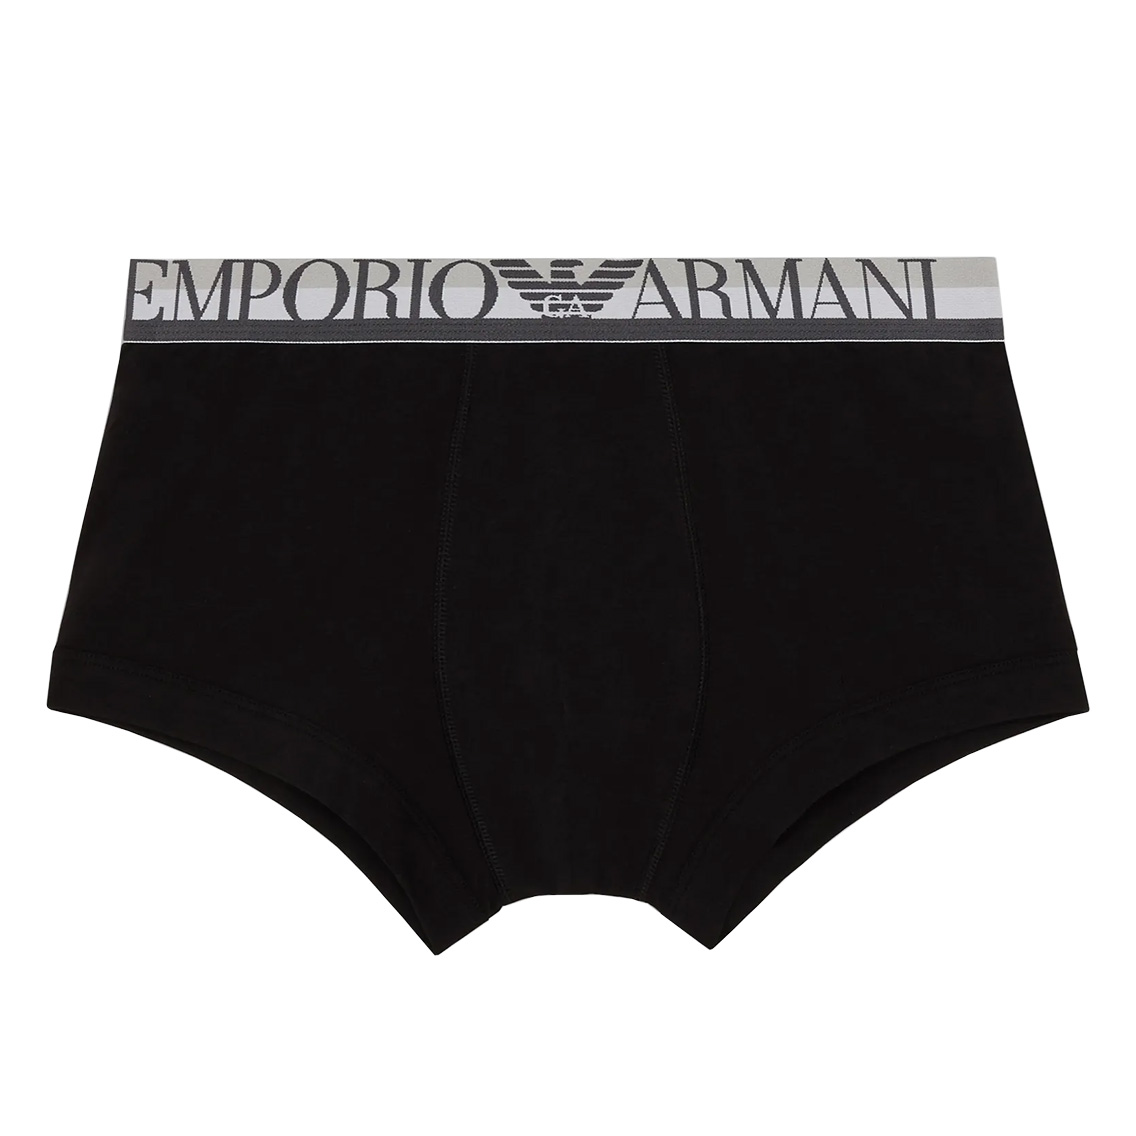 [111389-2R525-00020] EMPORIO ARMANI エンポリオアルマーニ ボクサーパンツ メンズ アンダーウェア インナー 男性 下着 ブランド おすす